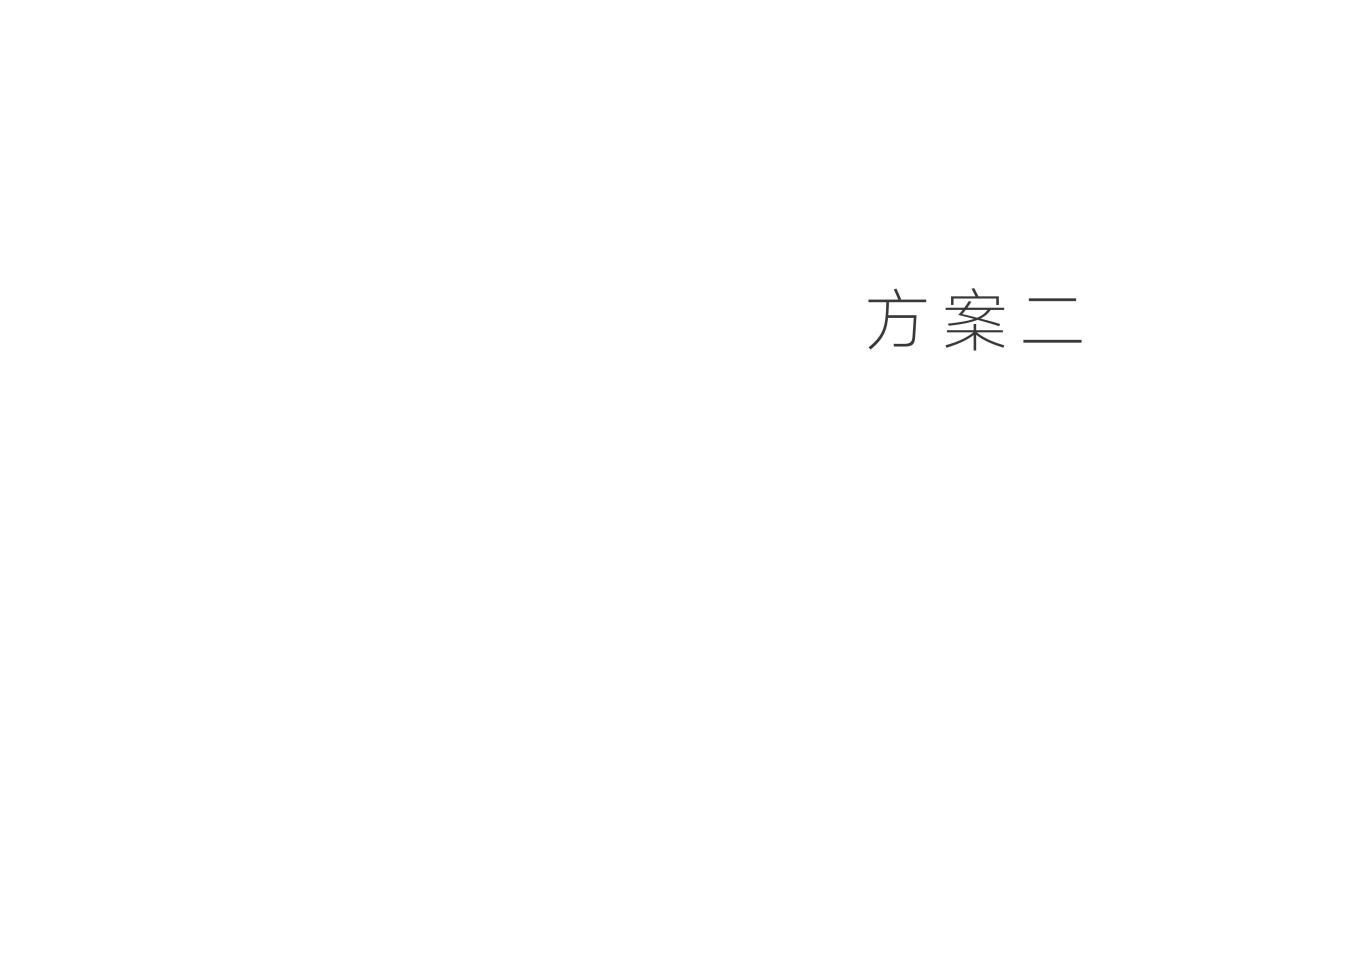 朱骏&任行投资公司logo设计图9